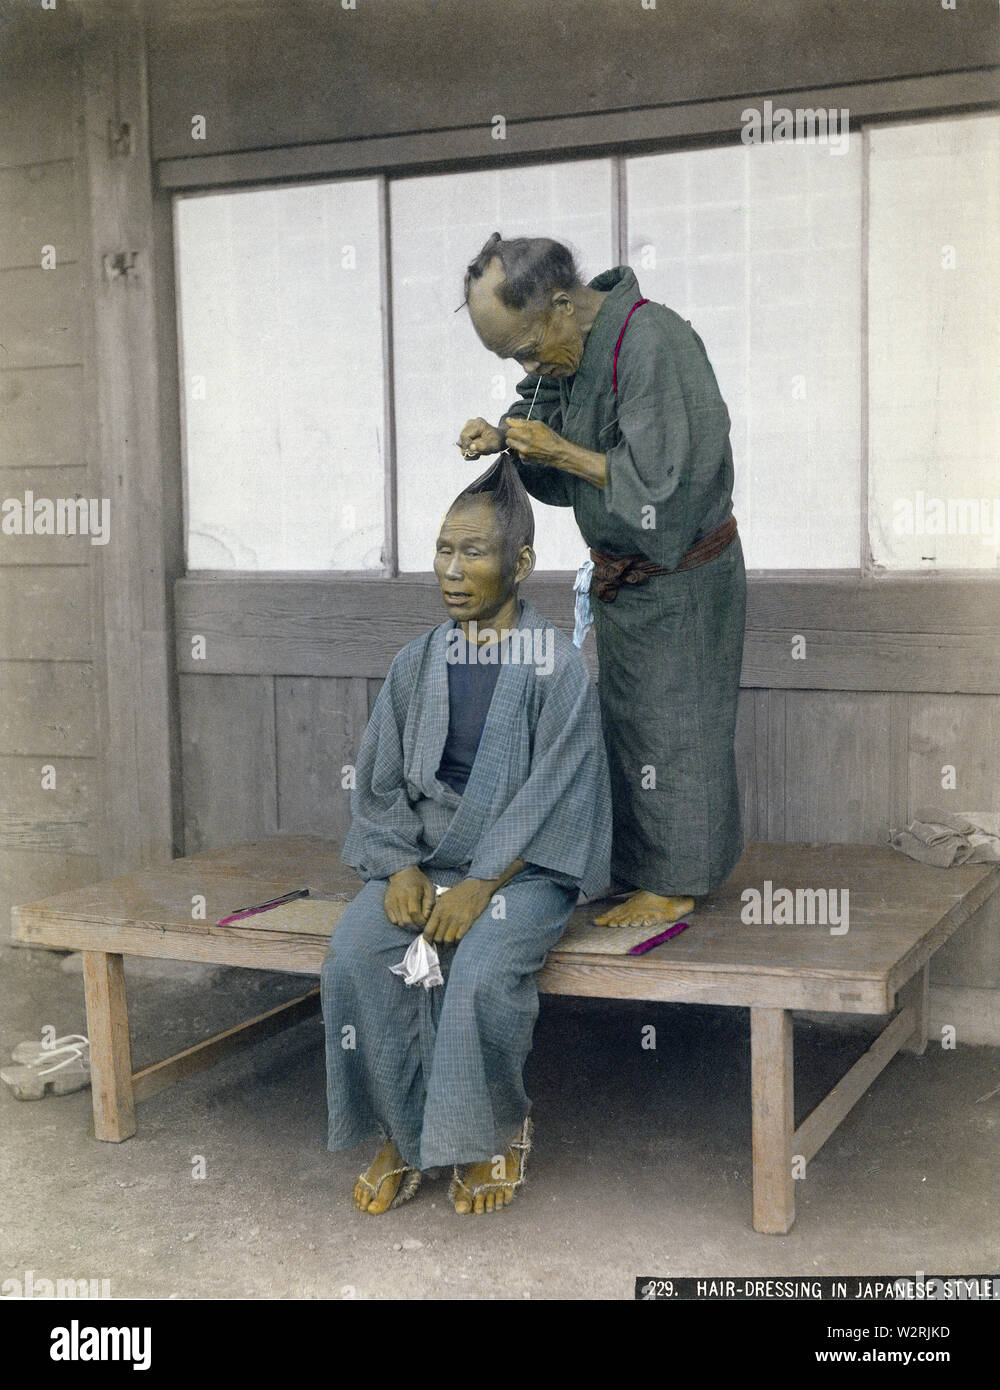 [1880s Japan - Japanische Friseur bei der Arbeit] - ein Friseur die Haare eines männlichen Kunden. Bis westlichen Frisuren während der Meiji Periode (1868-1912) gefördert wurden, japanische Männer trug ein chonmage Haarschopf. 19 Vintage albumen Foto. Stockfoto